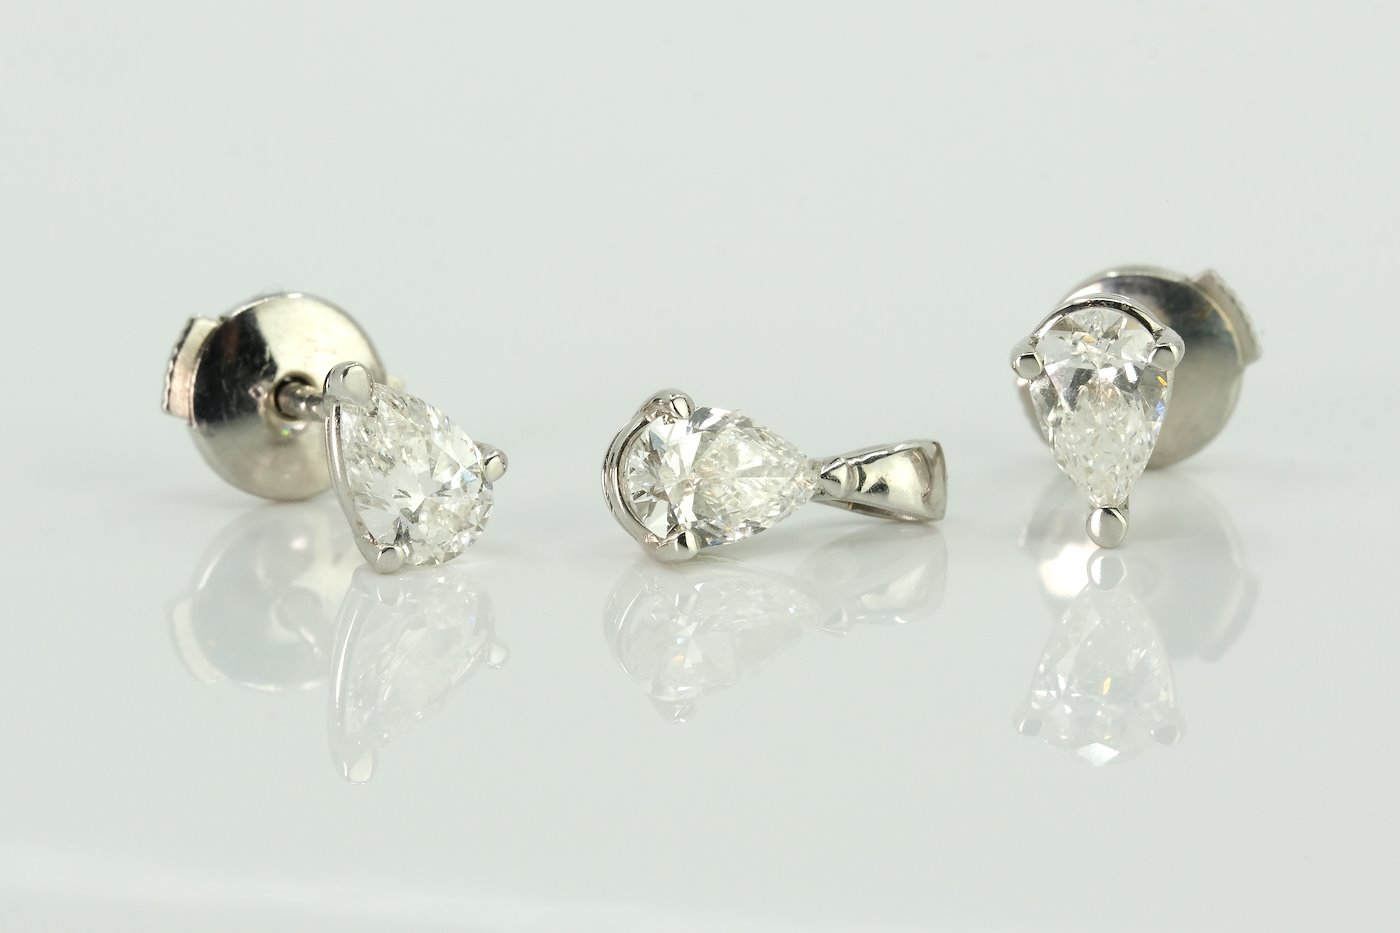 Anton Schwartz - Diamantové bodové náušnice a přívěšek ve výbrusu Pear, 3x centrální diamant o velikosti 0,33 ct, celkem 0,99 ct, zlato 585/1000, hrubá hmotnost sady 1,73 g